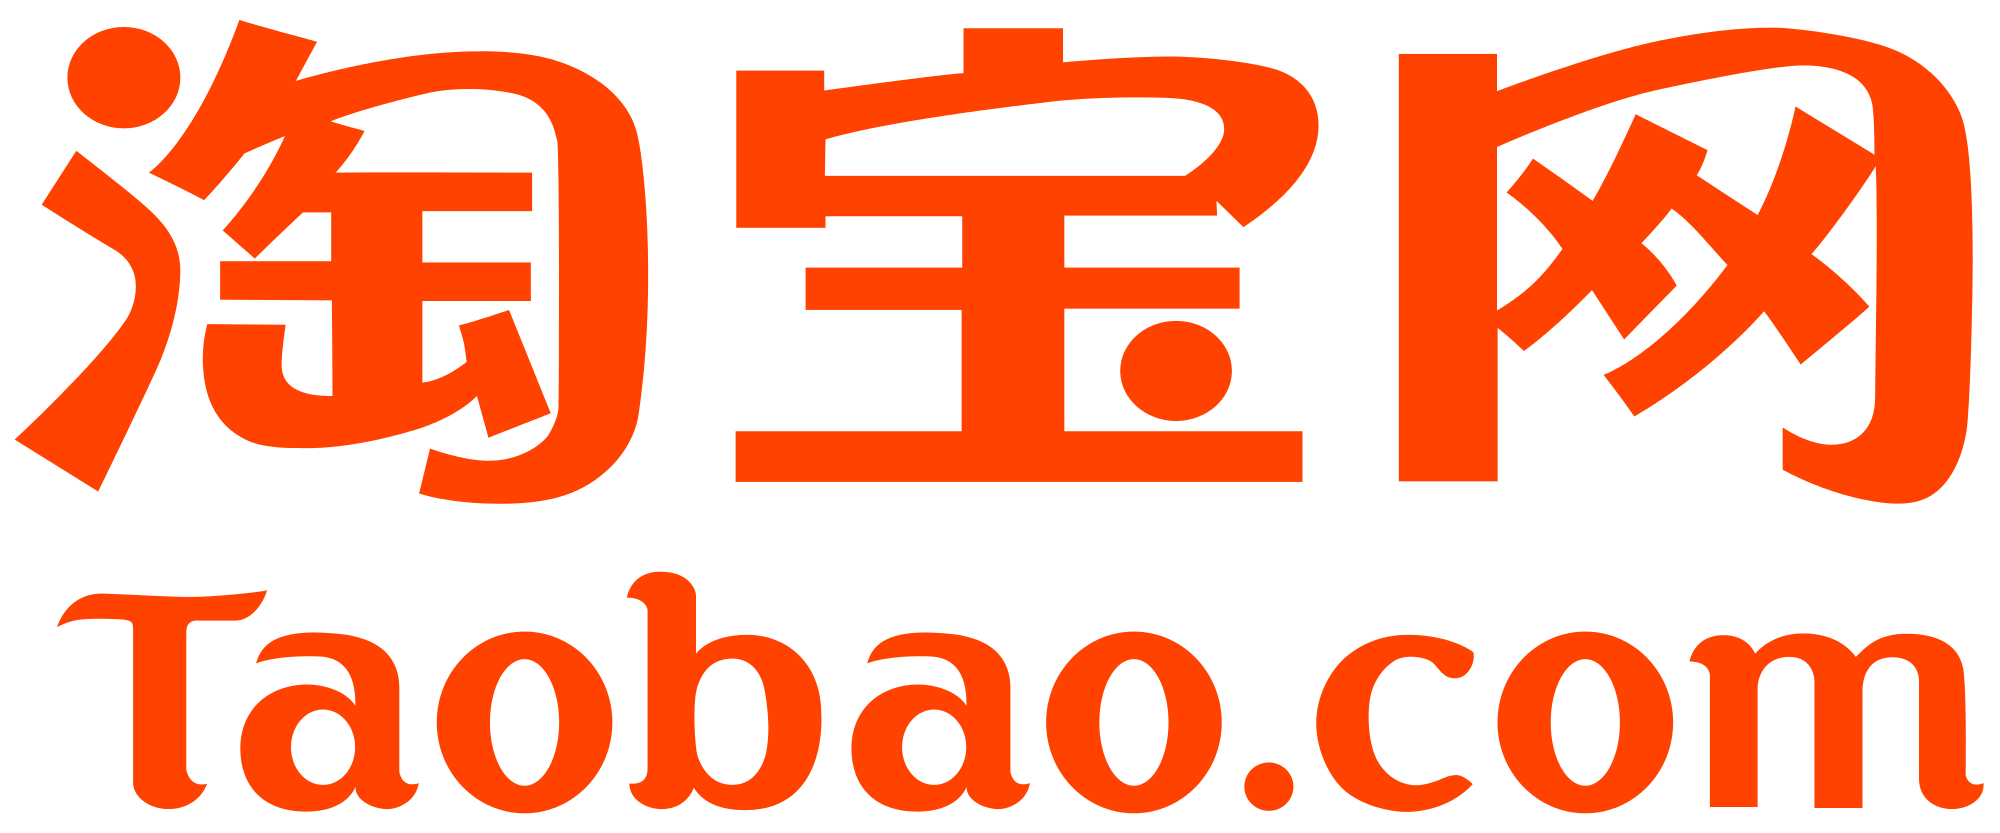 taobao logo icon